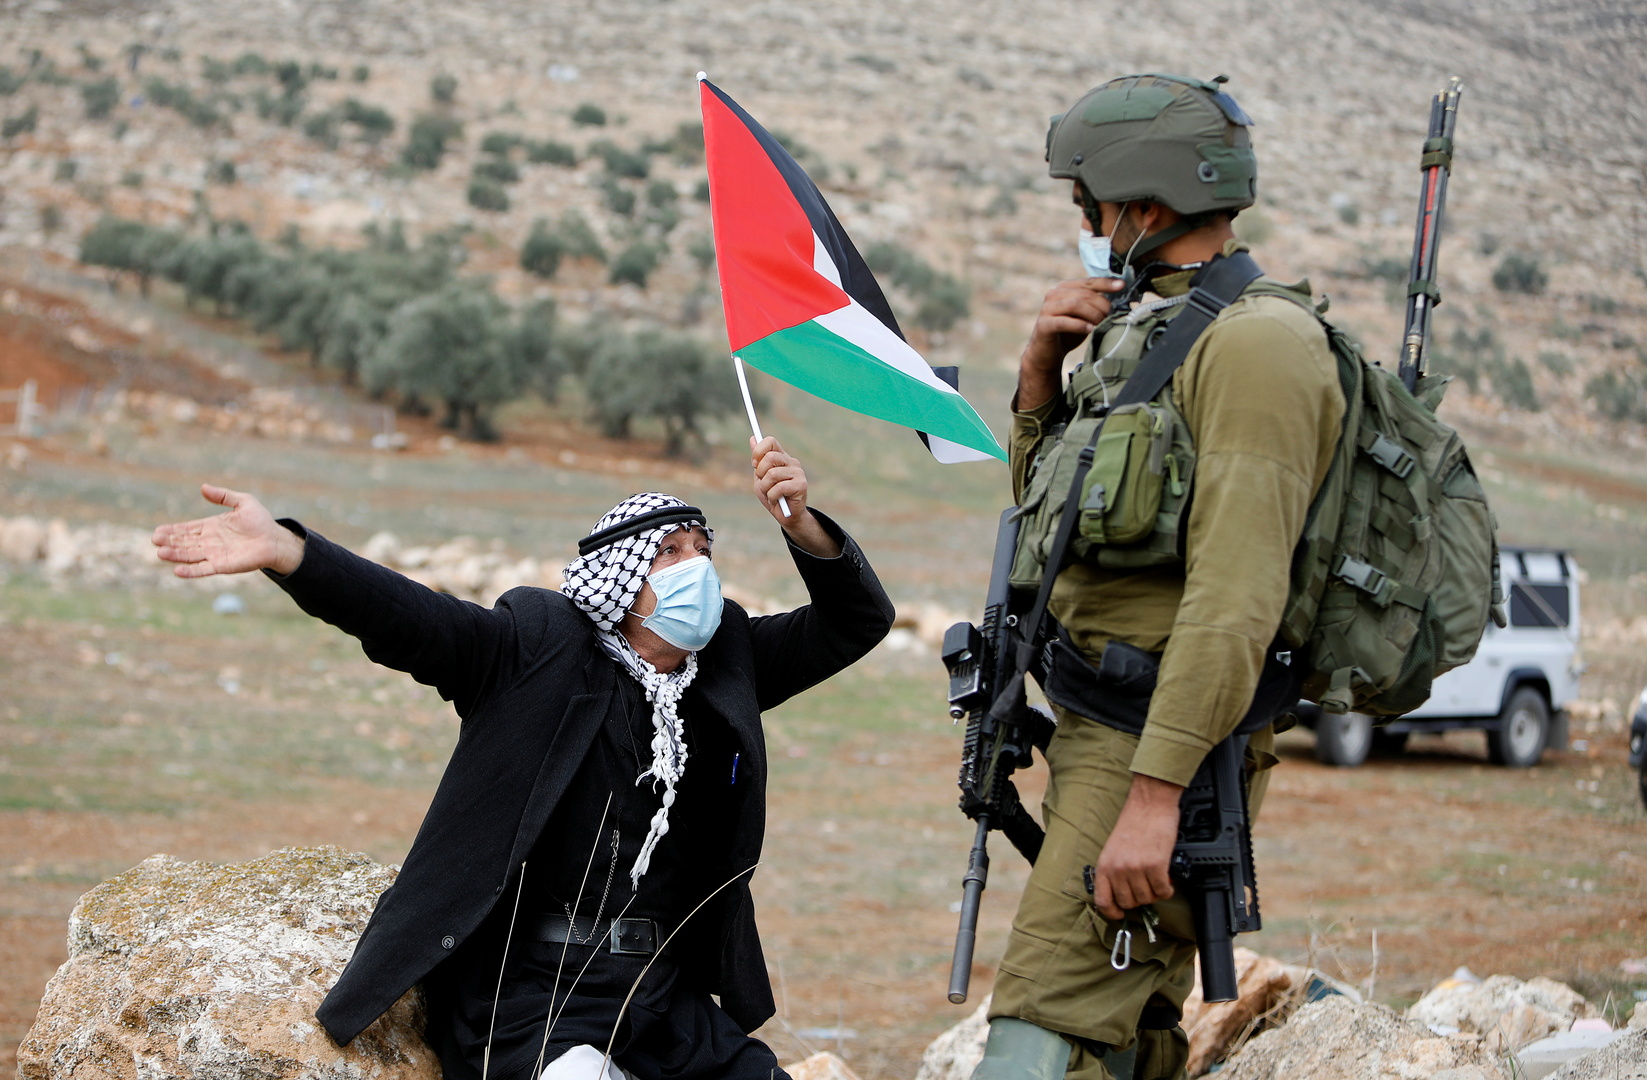 المالكي: نرحب بتأييد وزراء خارجية دول منظمة التعاون الإسلامي المطلق لحقوق الشعب الفلسطيني